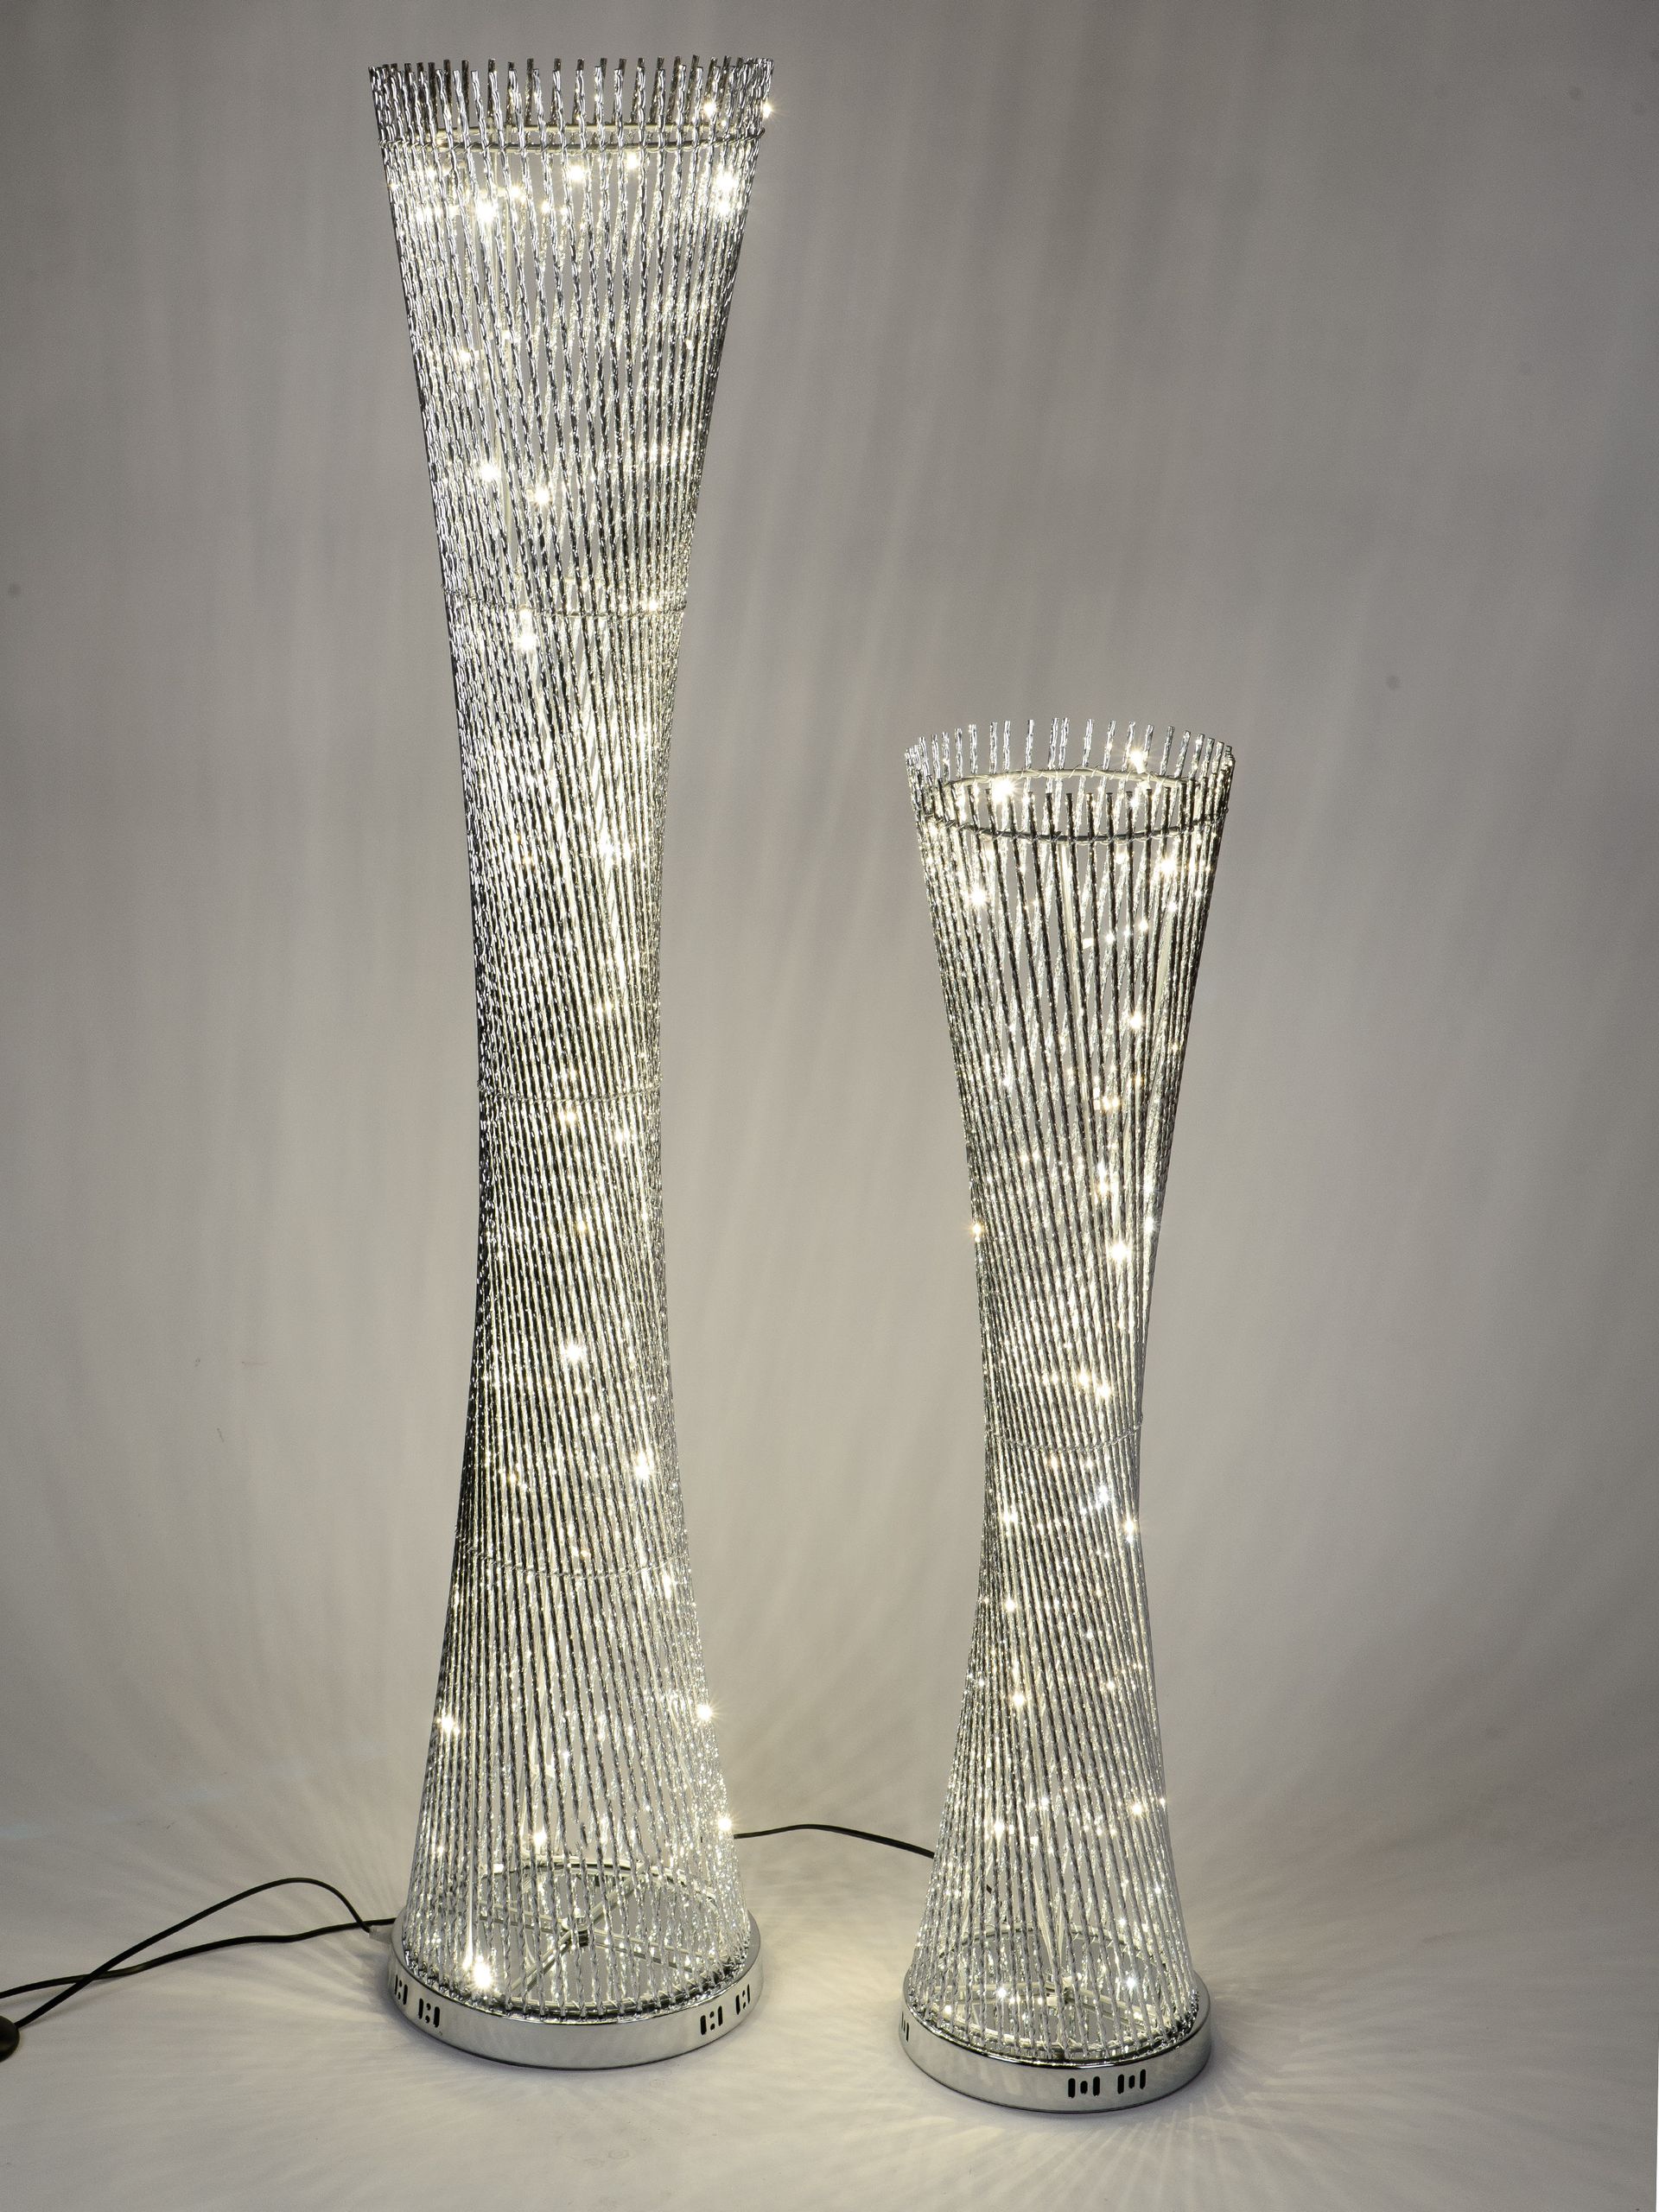 Lampe 100 cm x 25cm Nickel weiss mit weissem Schirm und glänzendem Nickel-Fuß